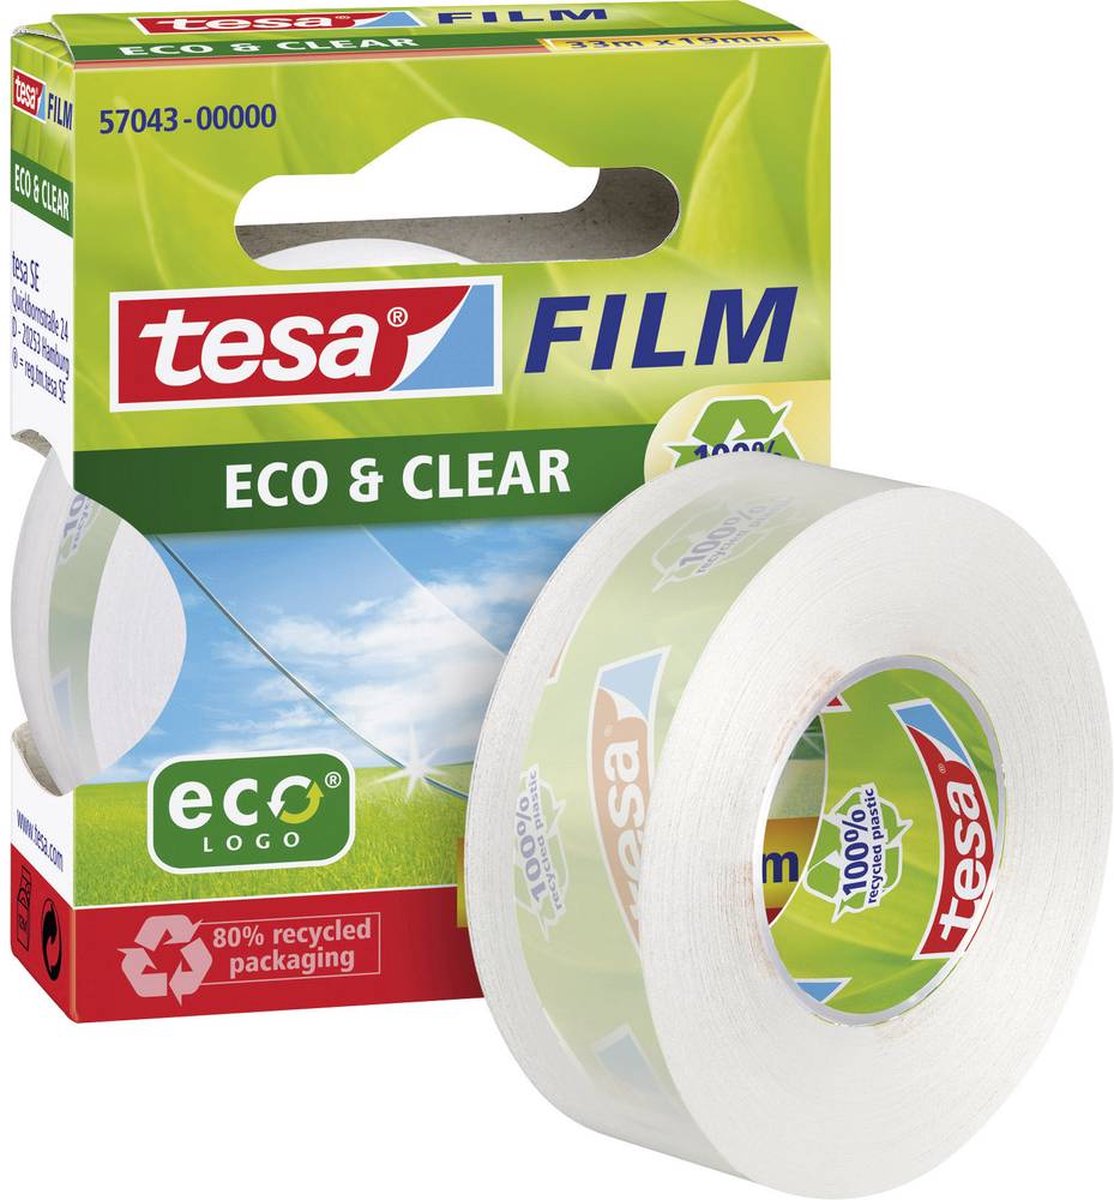 Tesa 57035-00000-00 57035-00000-00 film film Eco & Clear Transparant (l x b) 10 m x 15 mm 10 m